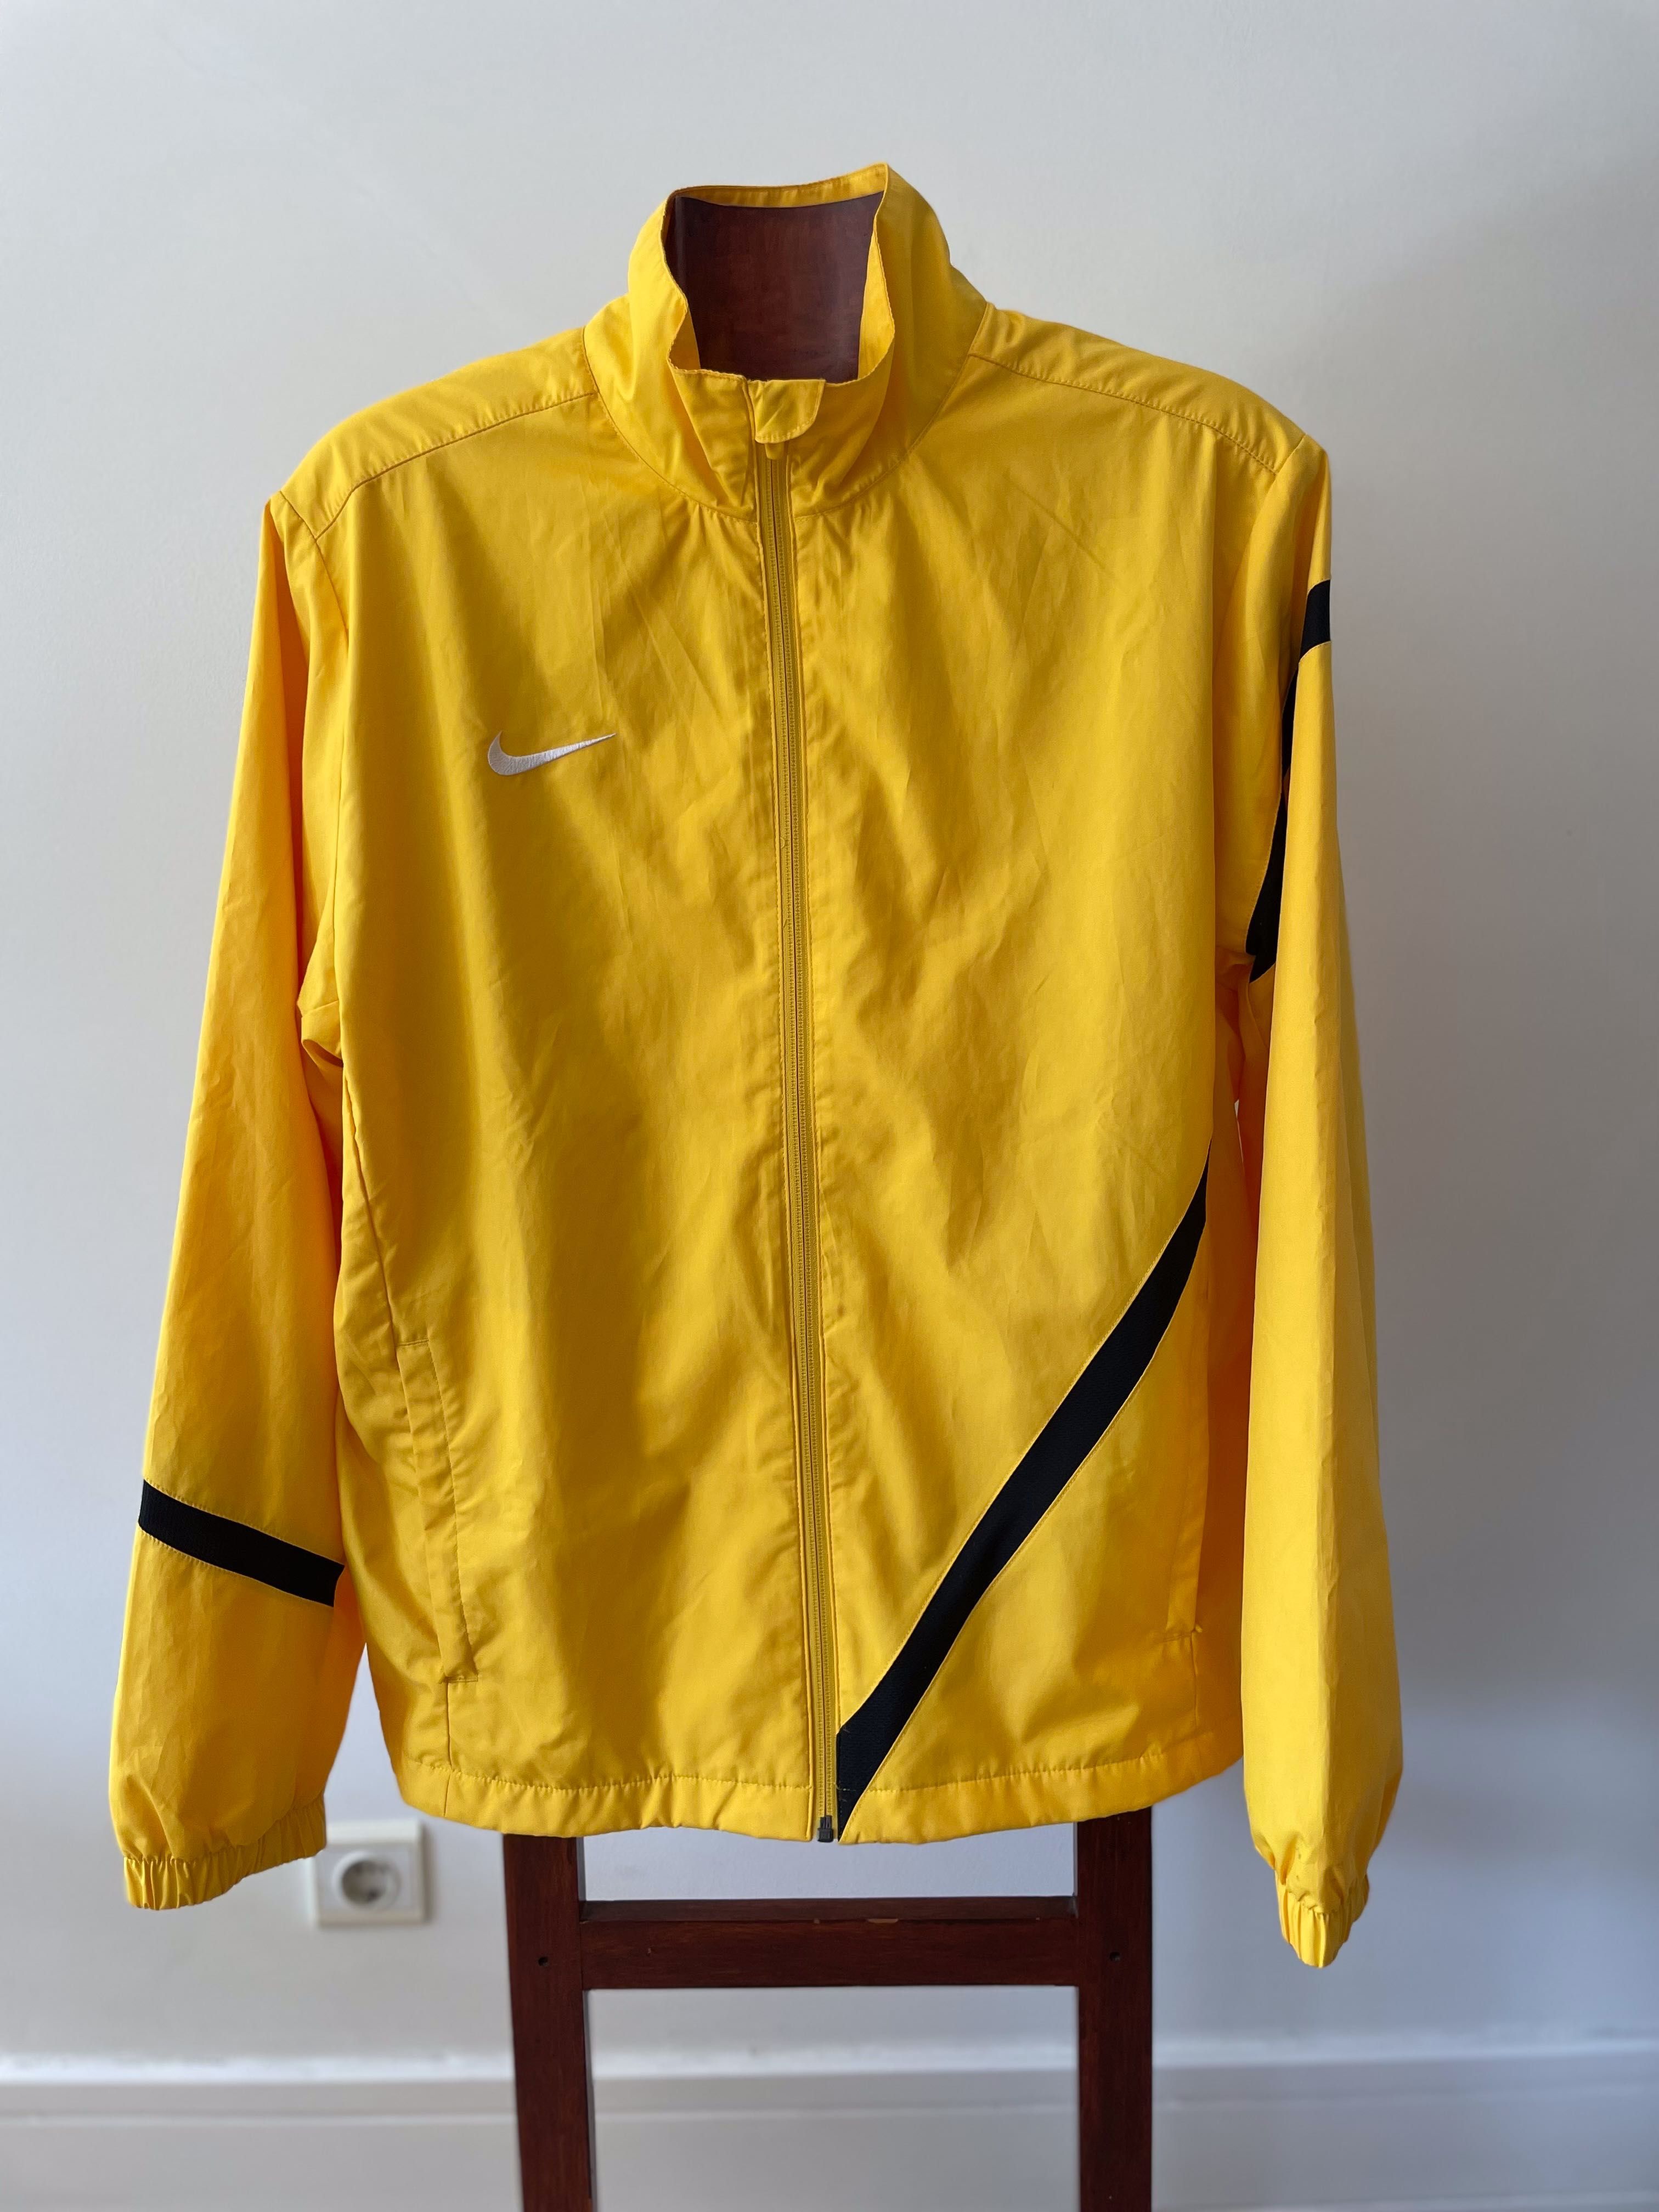 Casaco Nike Amarelo (Large) com risca diagonal Preta